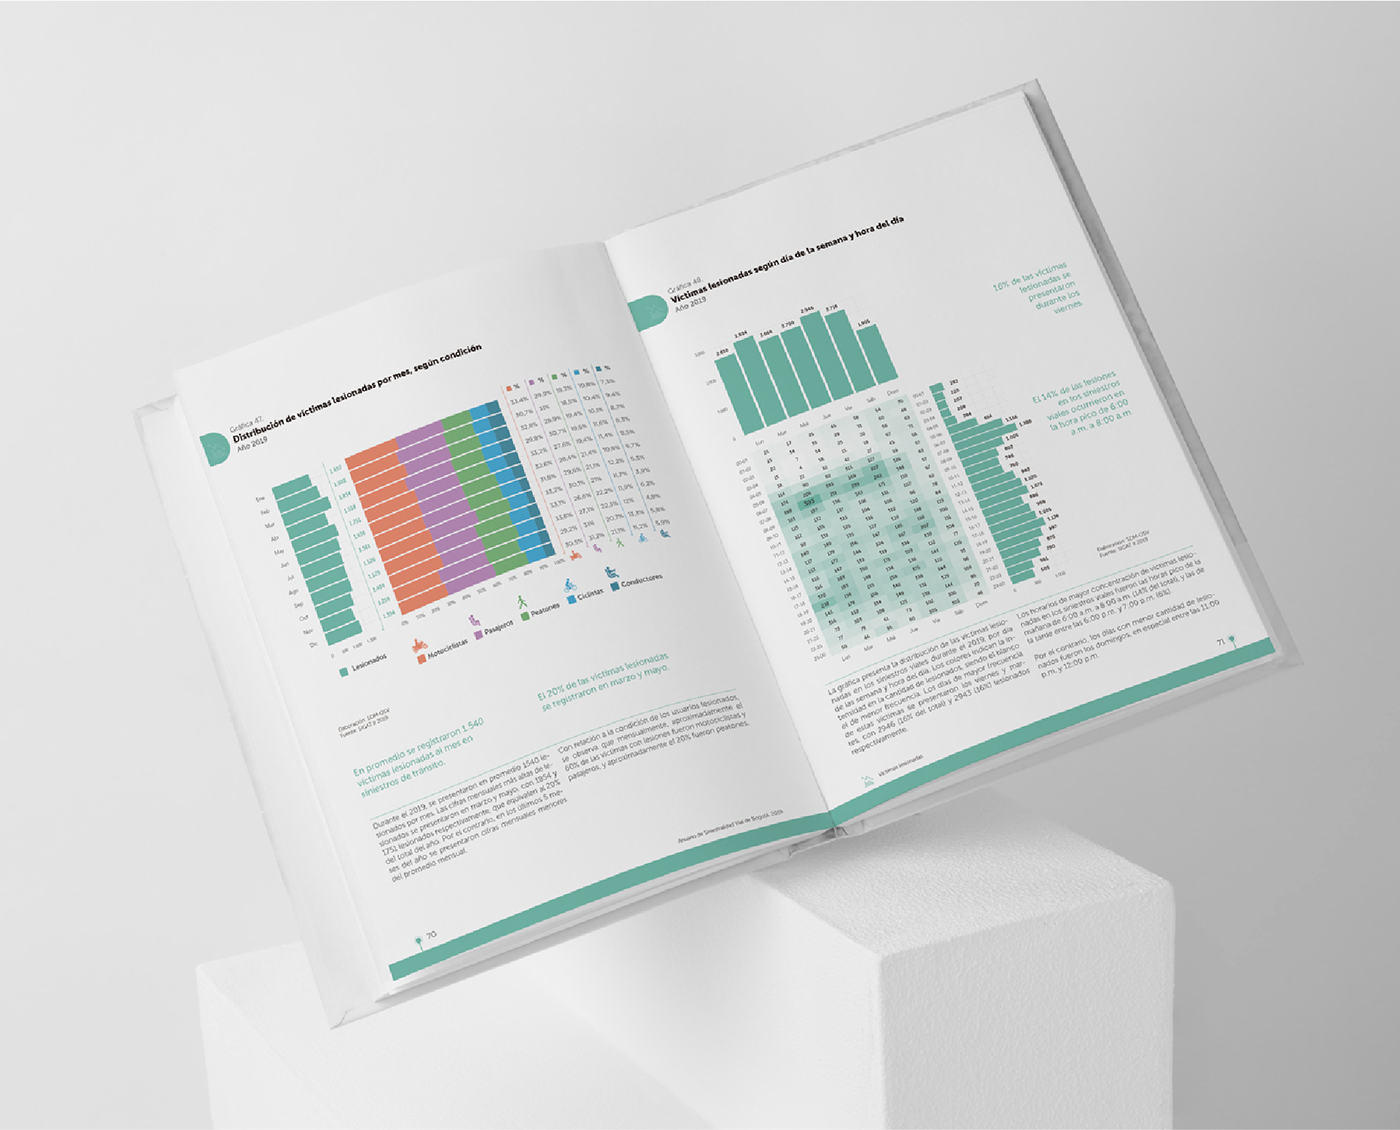 diseño gráfico libros Diseño editorial diagramación editorial impresos infografia Diseño de información ilustracion visualizacion datos